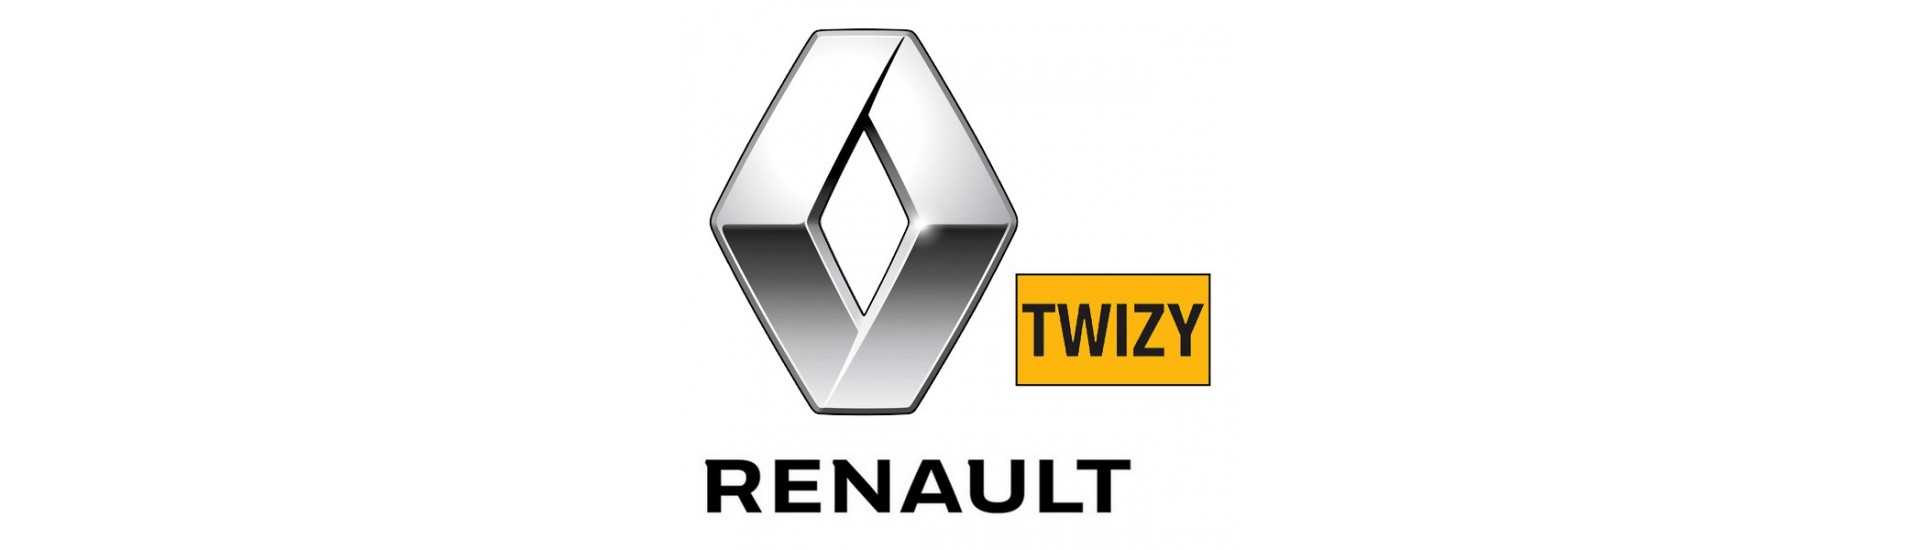 Geschwindigkeitsbox zum besten Preis Auto ohne Lizenz Renault Twizy